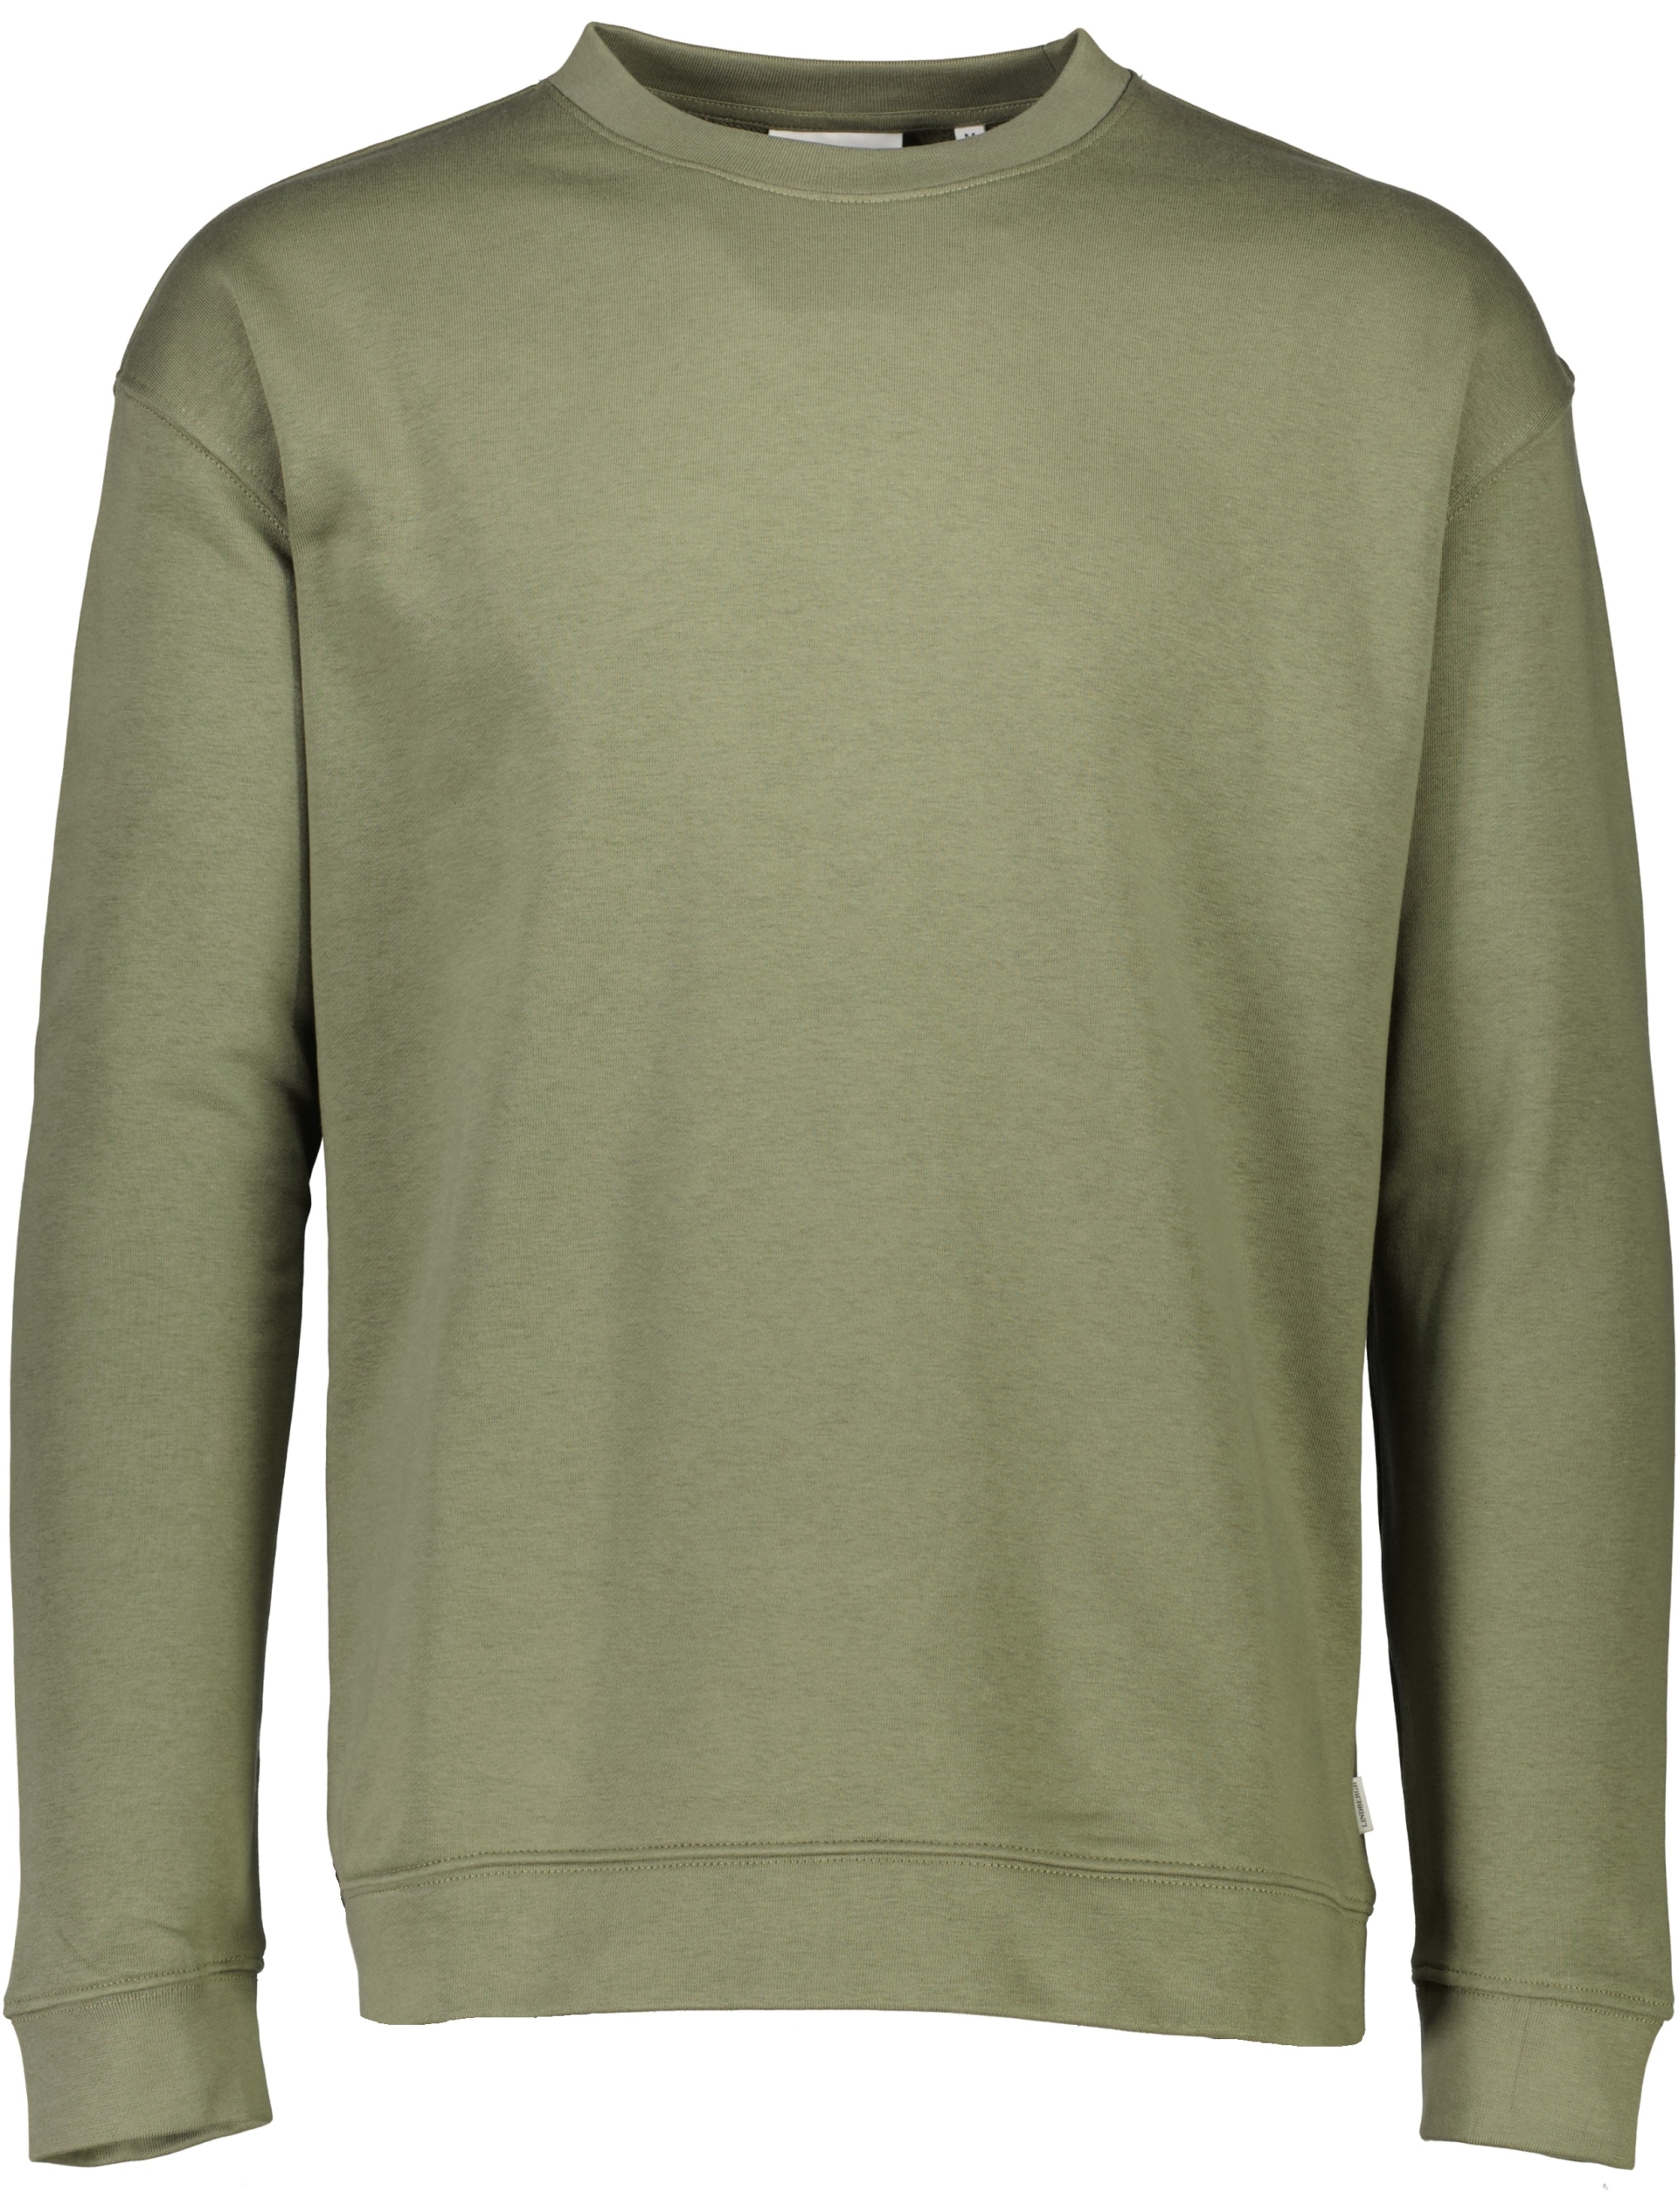 Lindbergh Sweatshirt grön / army